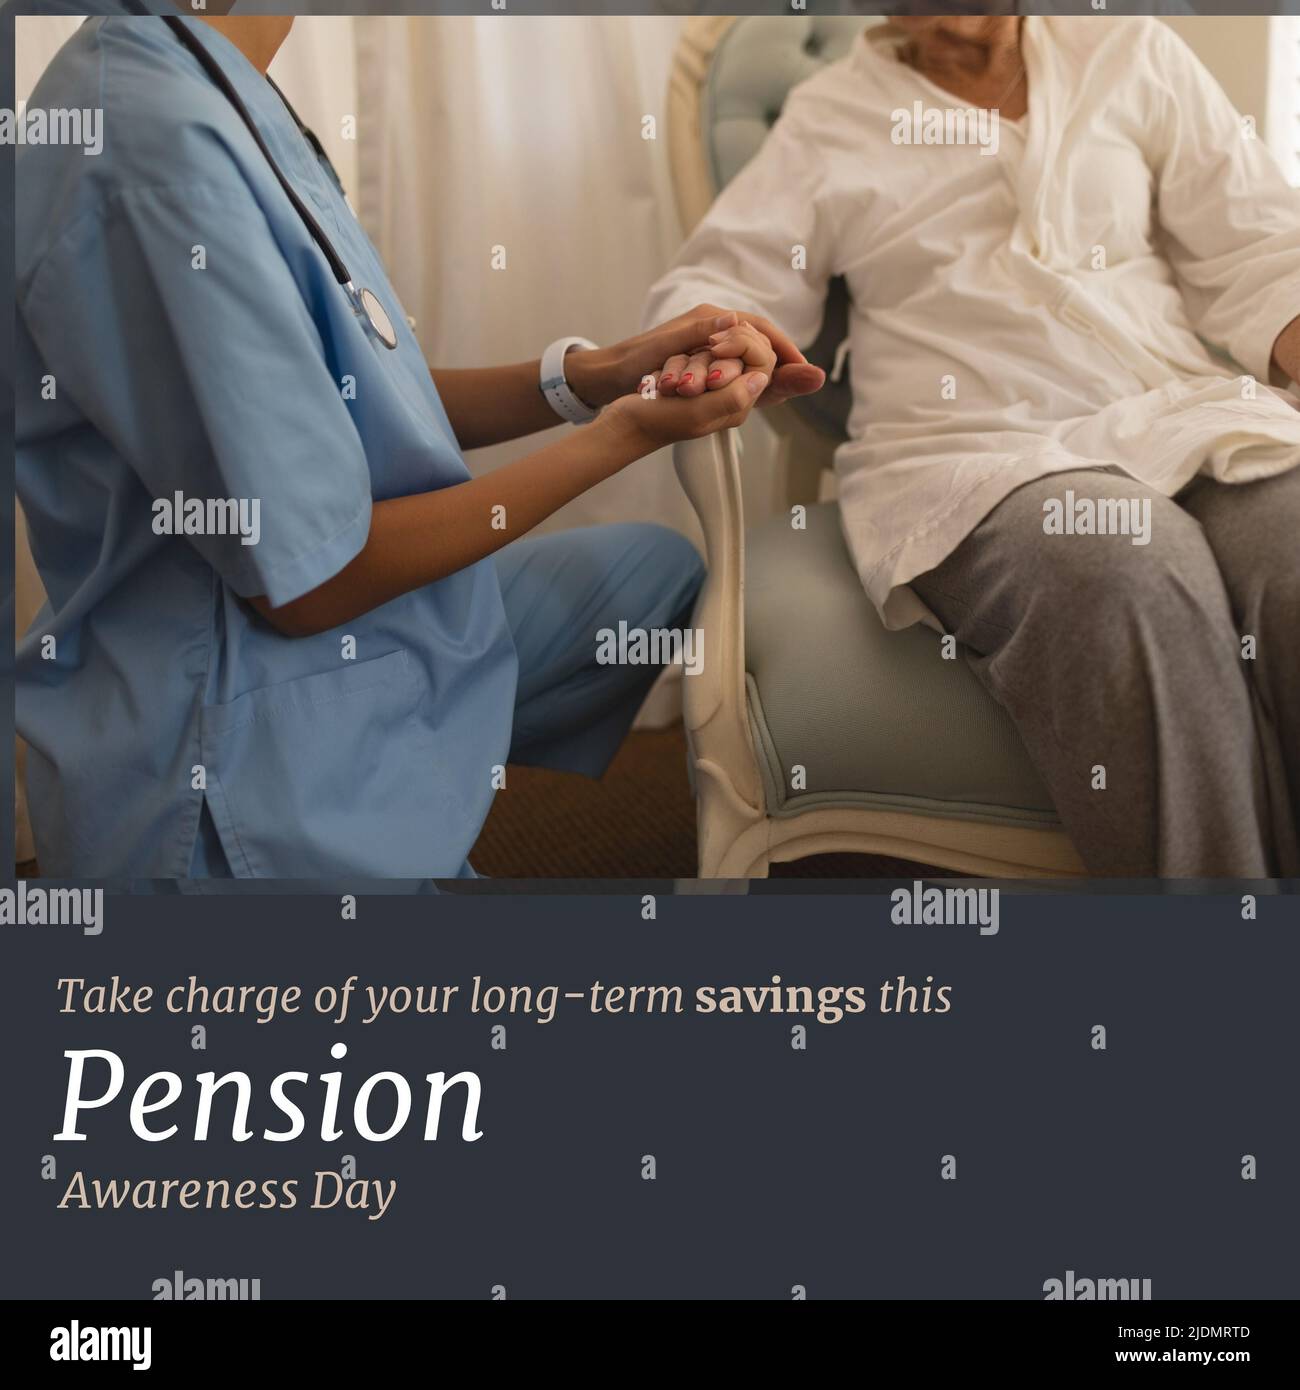 Immagine digitale del medico biraciale che tiene la mano della donna anziana, testo del giorno di sensibilizzazione alla pensione Foto Stock